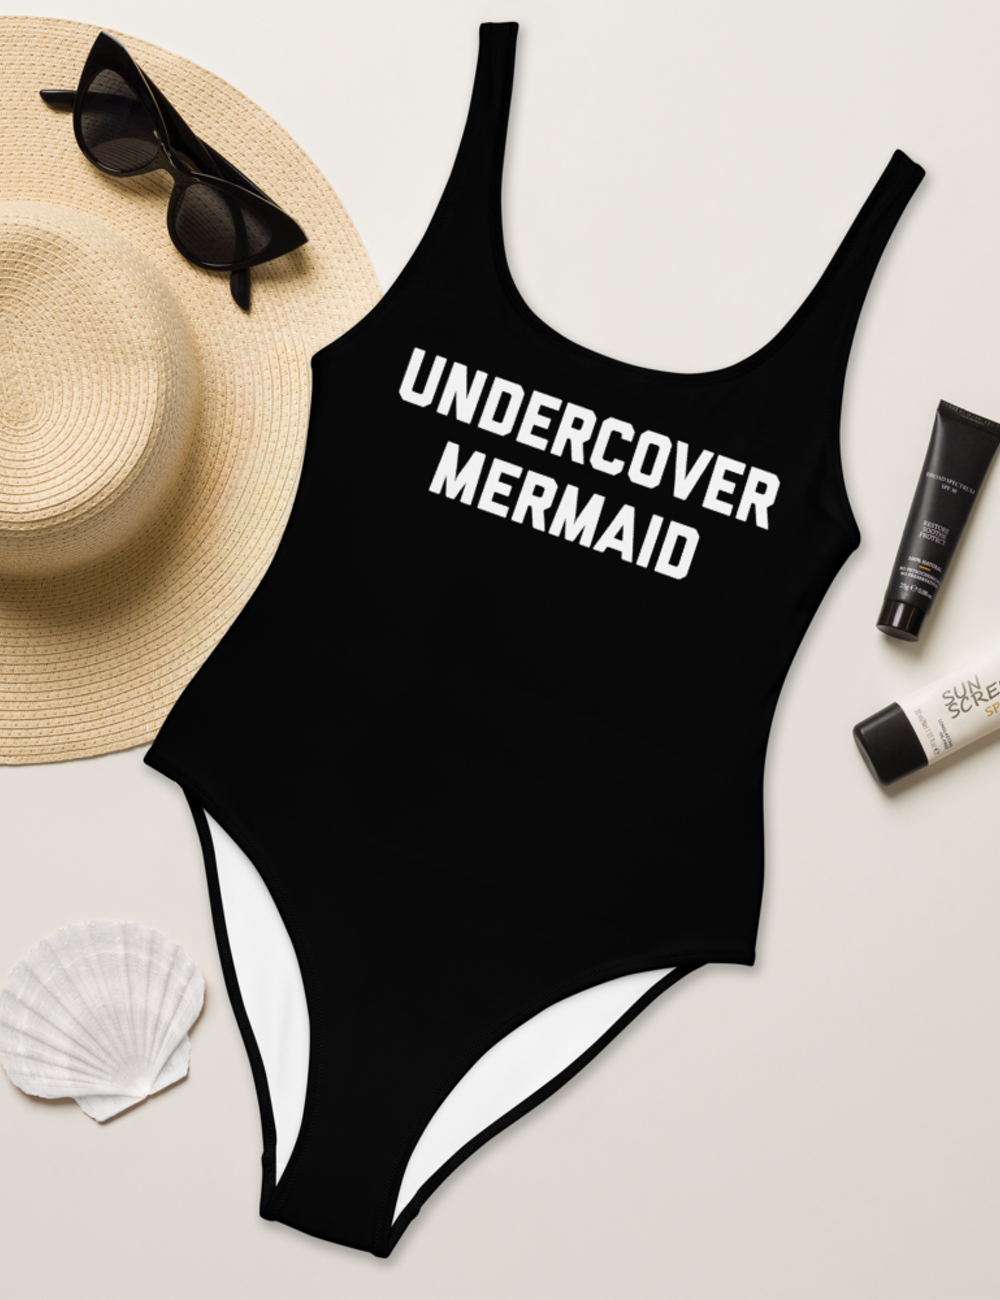 Undercover Mermaid | Women's One-Piece Swimsuit OniTakai